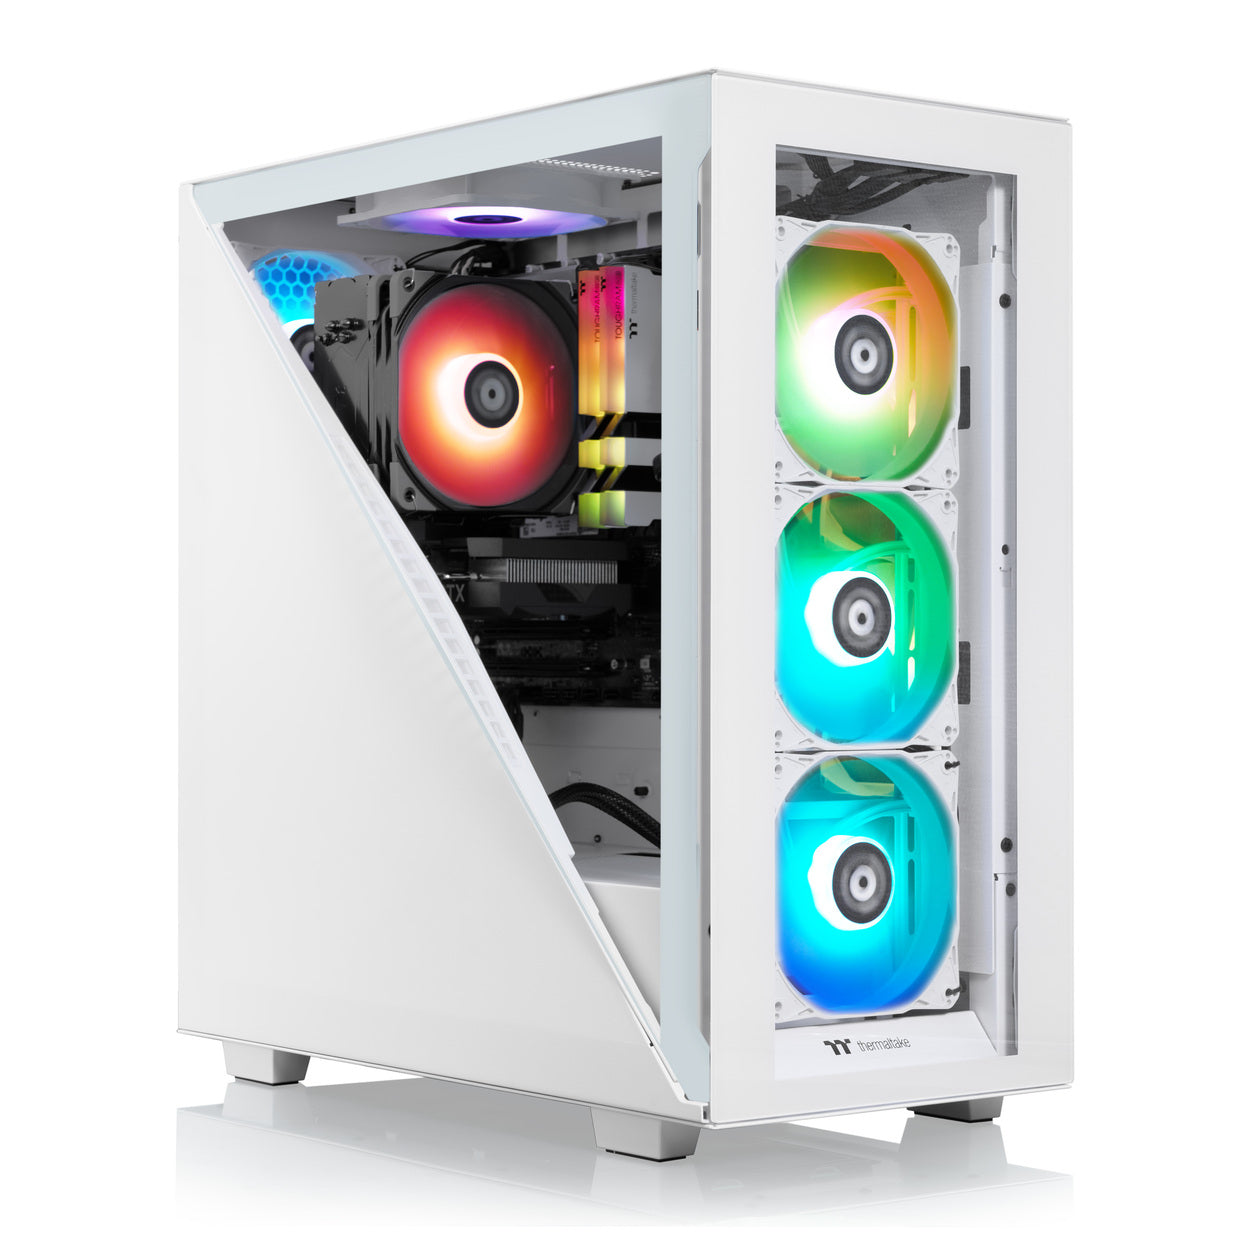 Avalanche i460 R4 | Thermaltake Gaming PCs – Thermaltake USA